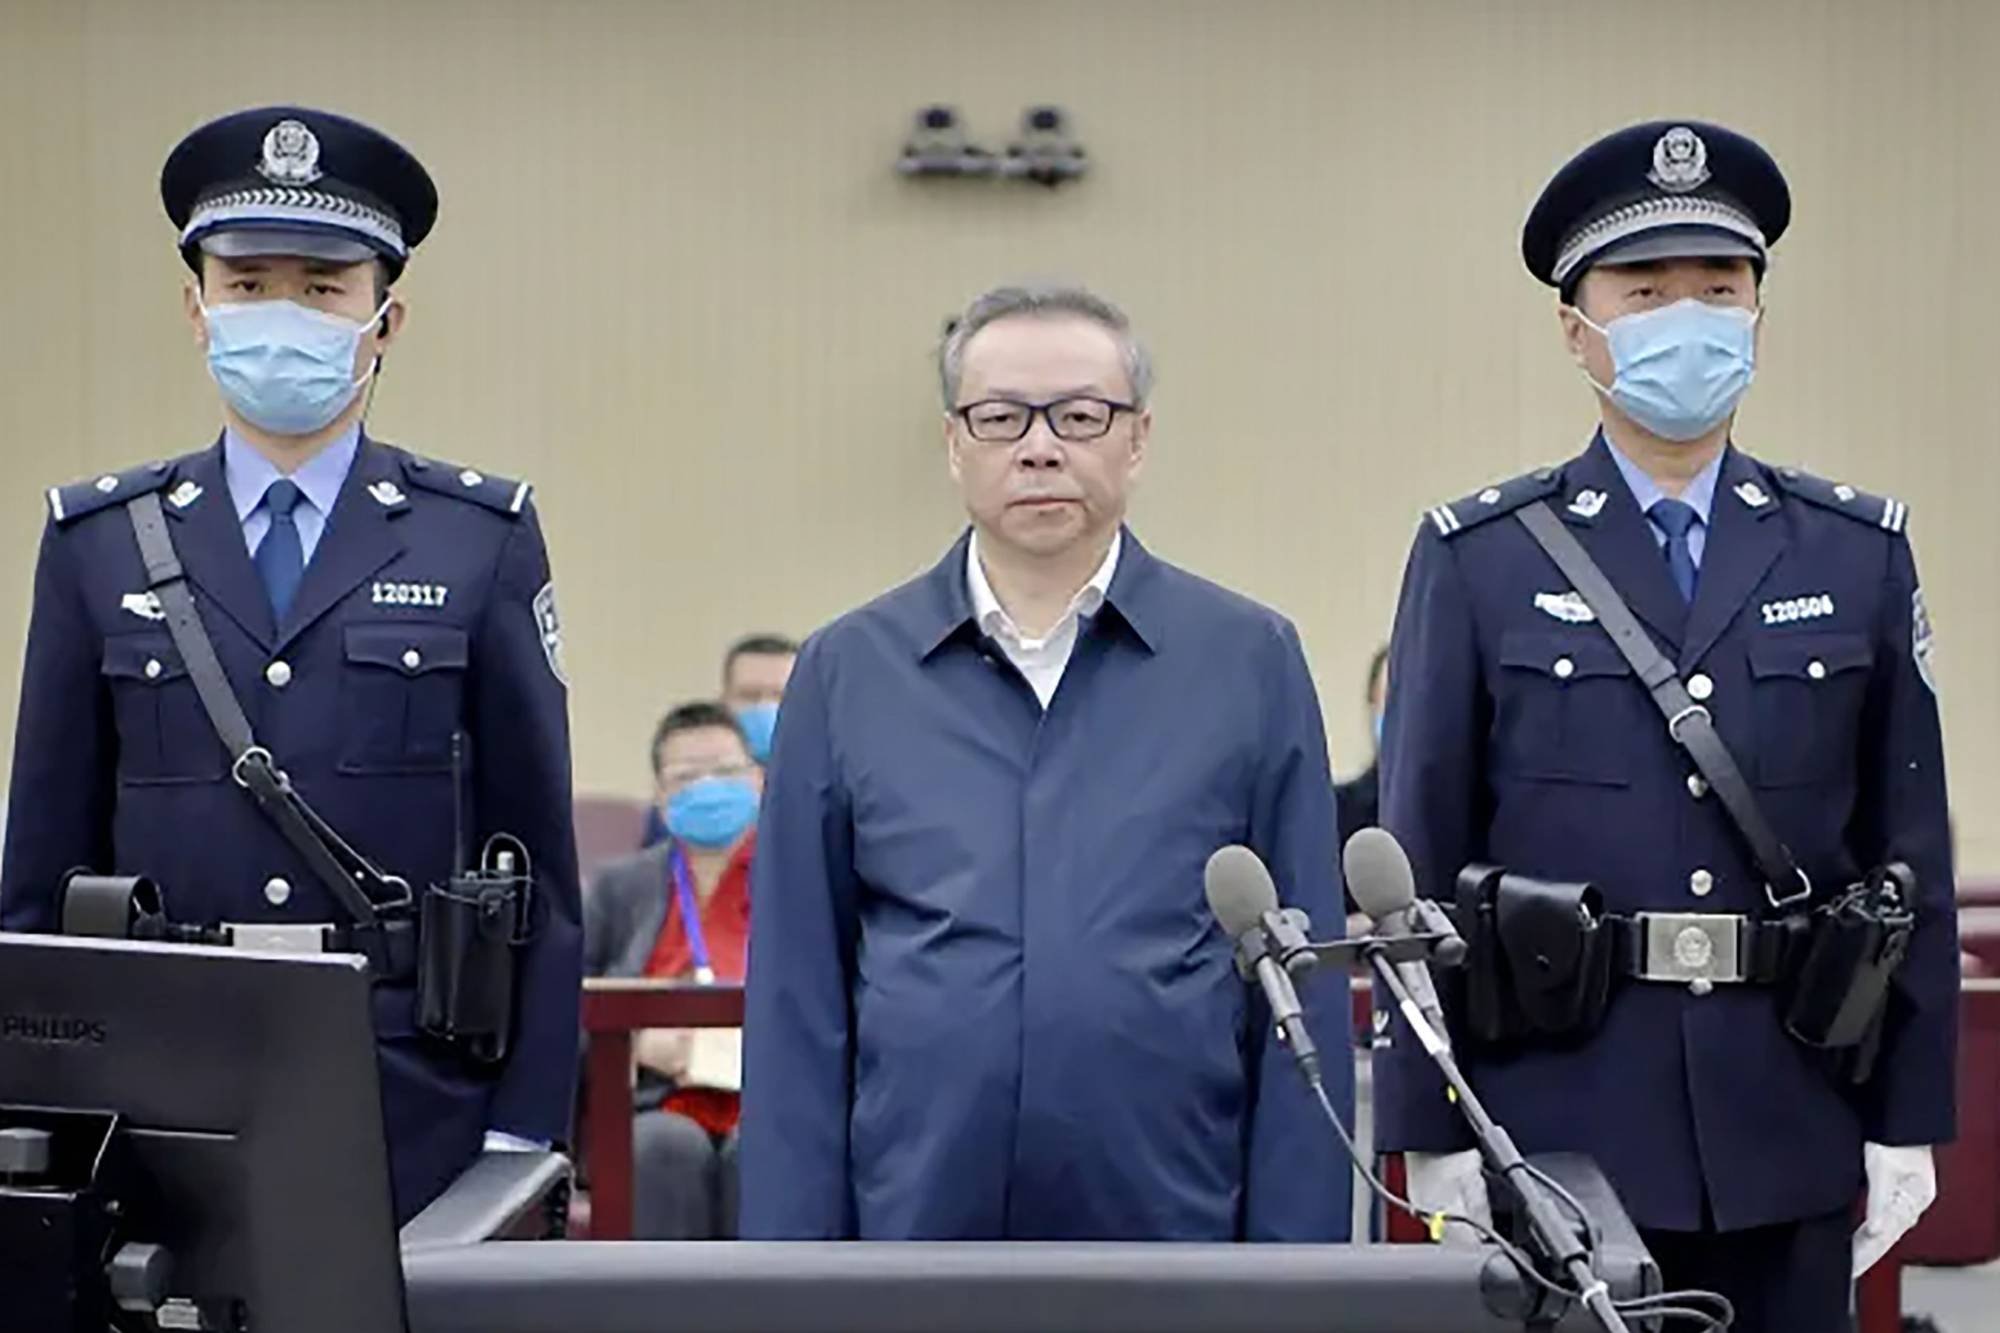  Fost conducător al unui conglomerat financiar, executat în China